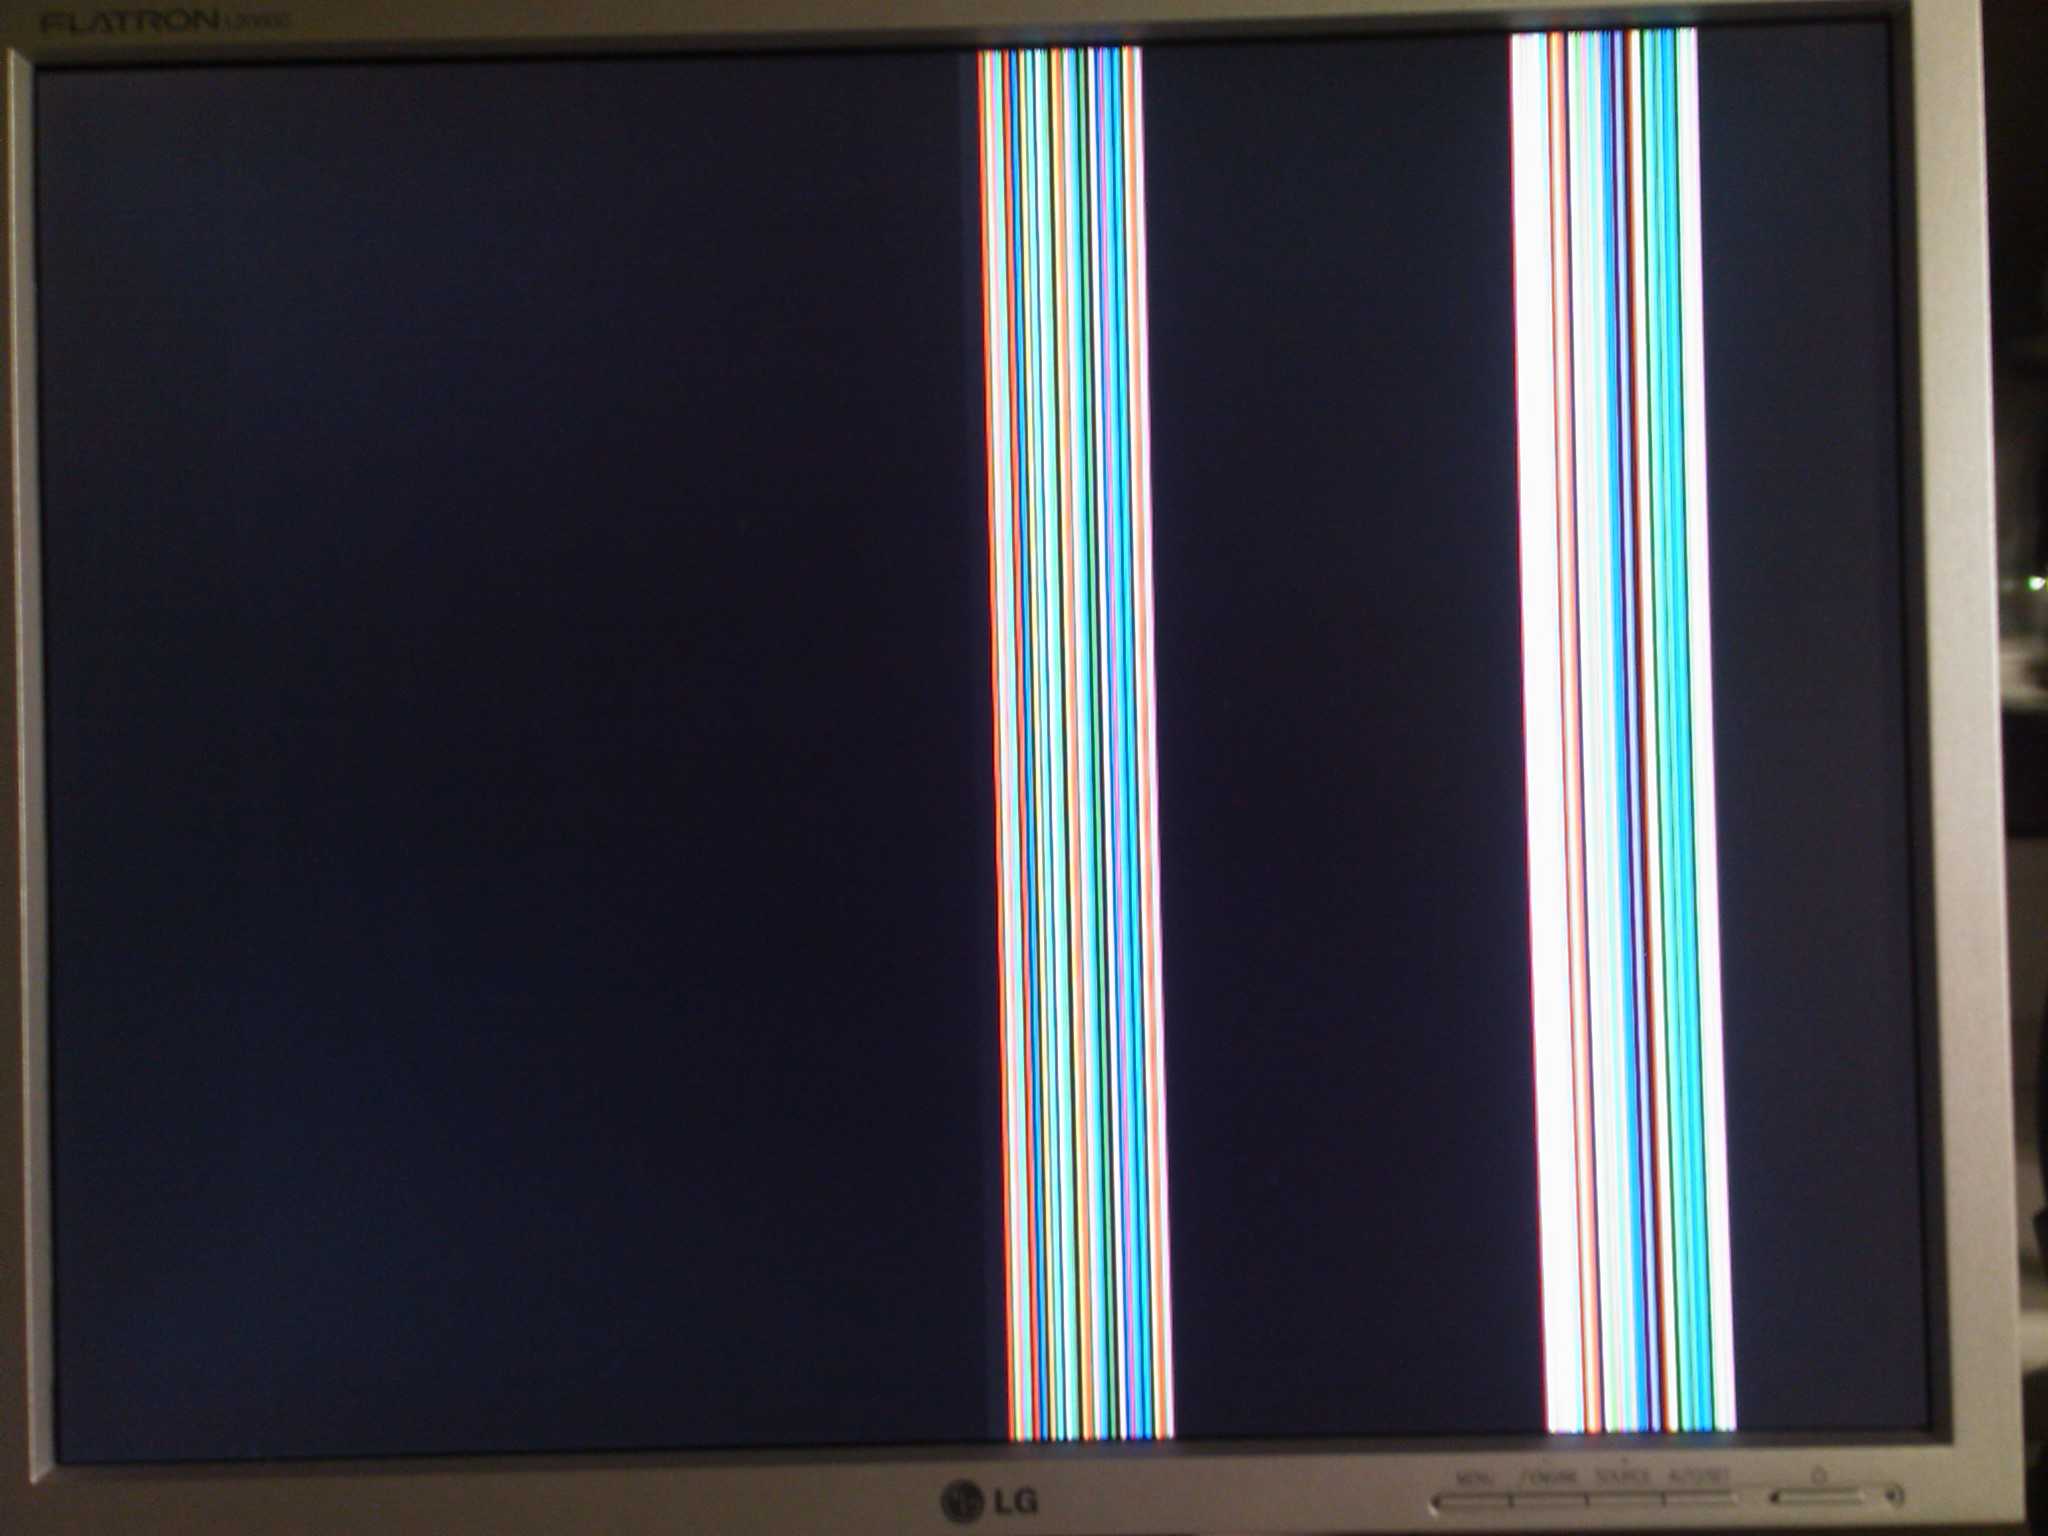 Вертикальная полоса на экране жк телевизора, методы ремонта.